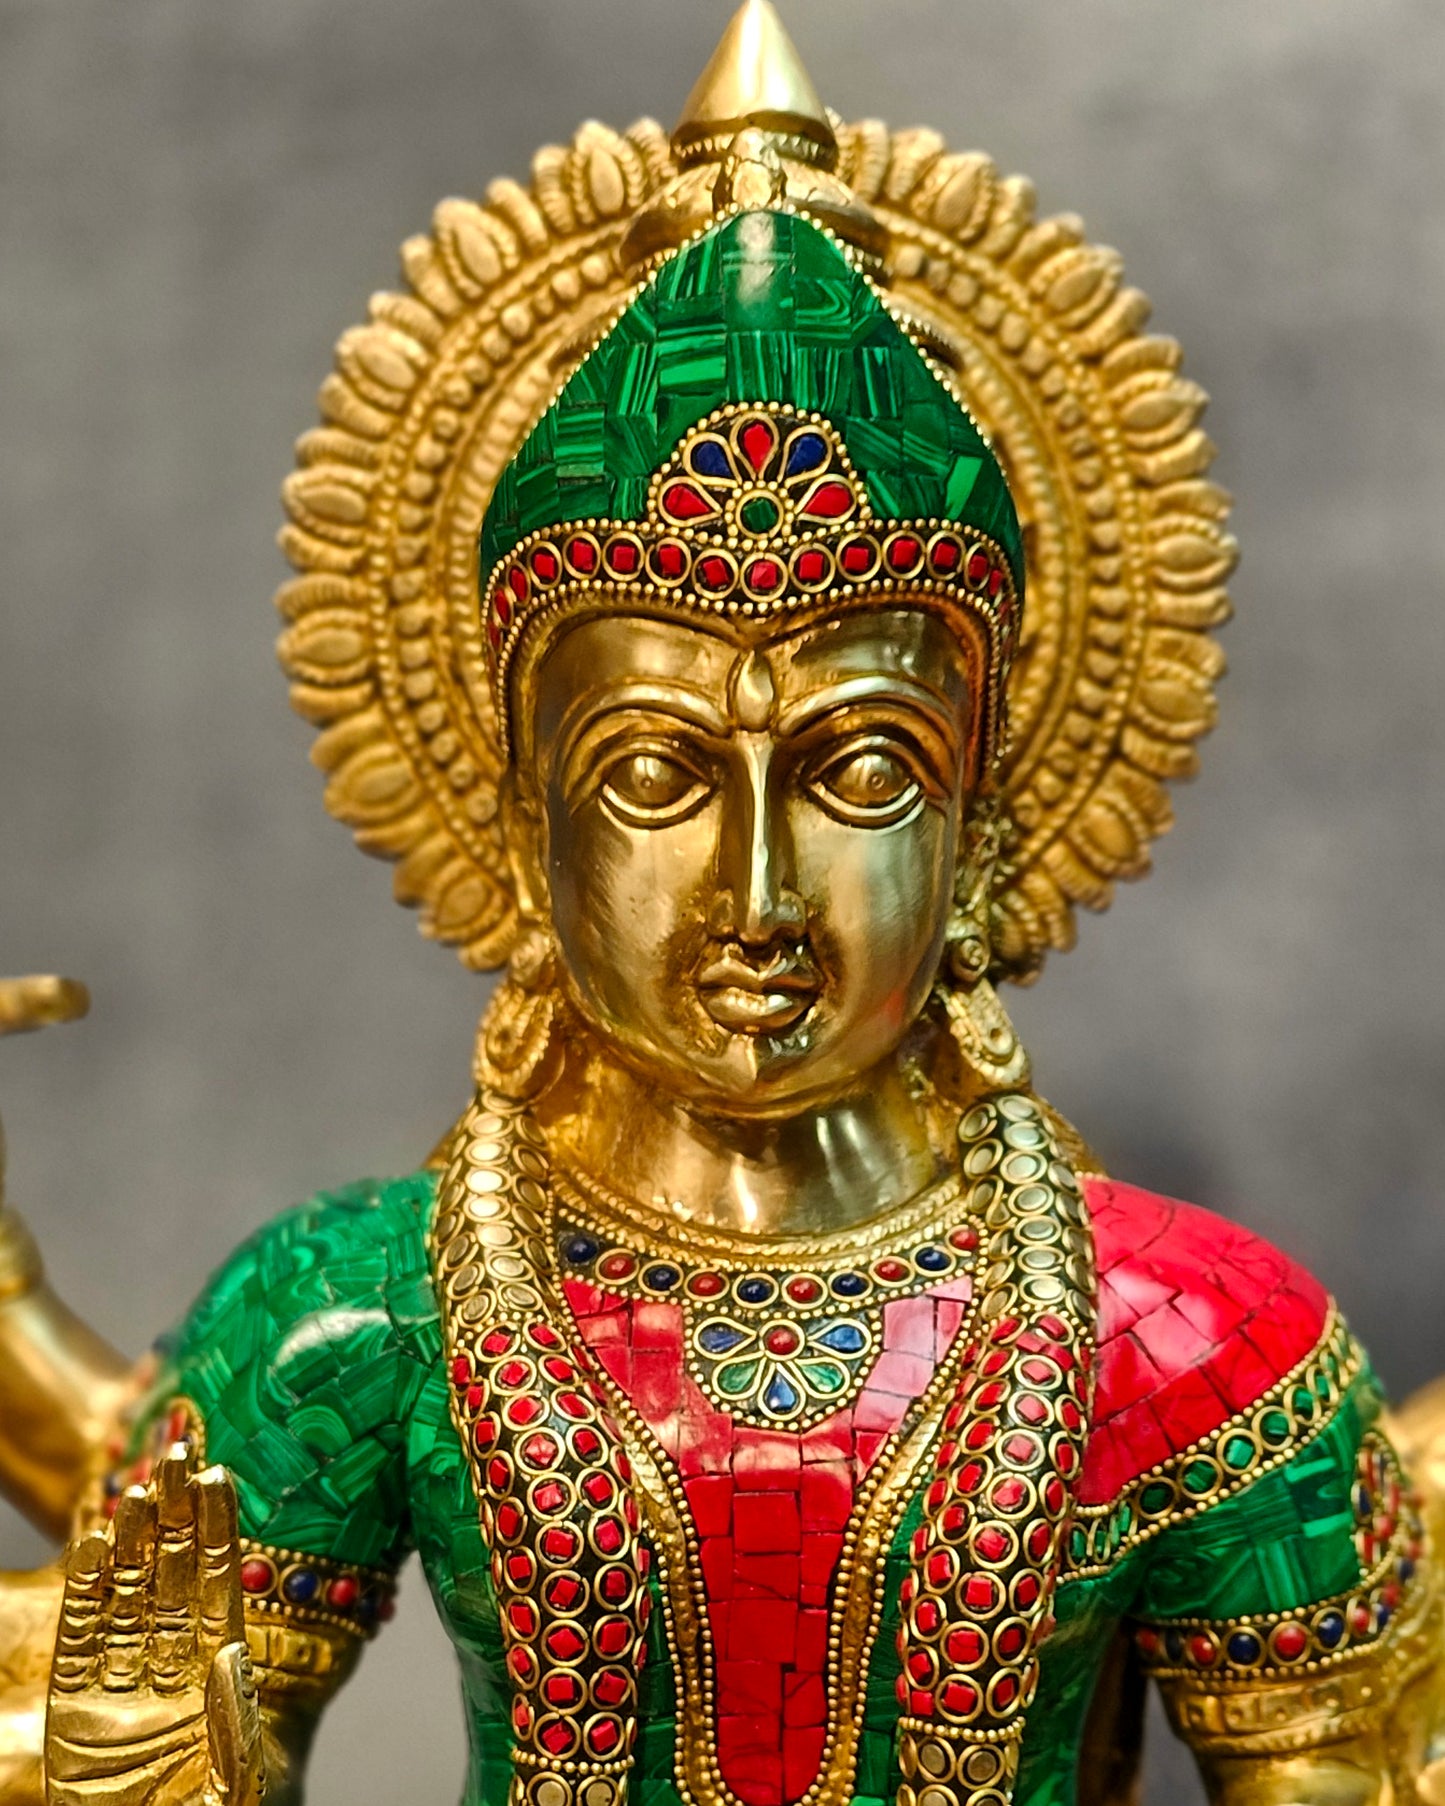 Durga Superfine Brass Statue 24" with stonework